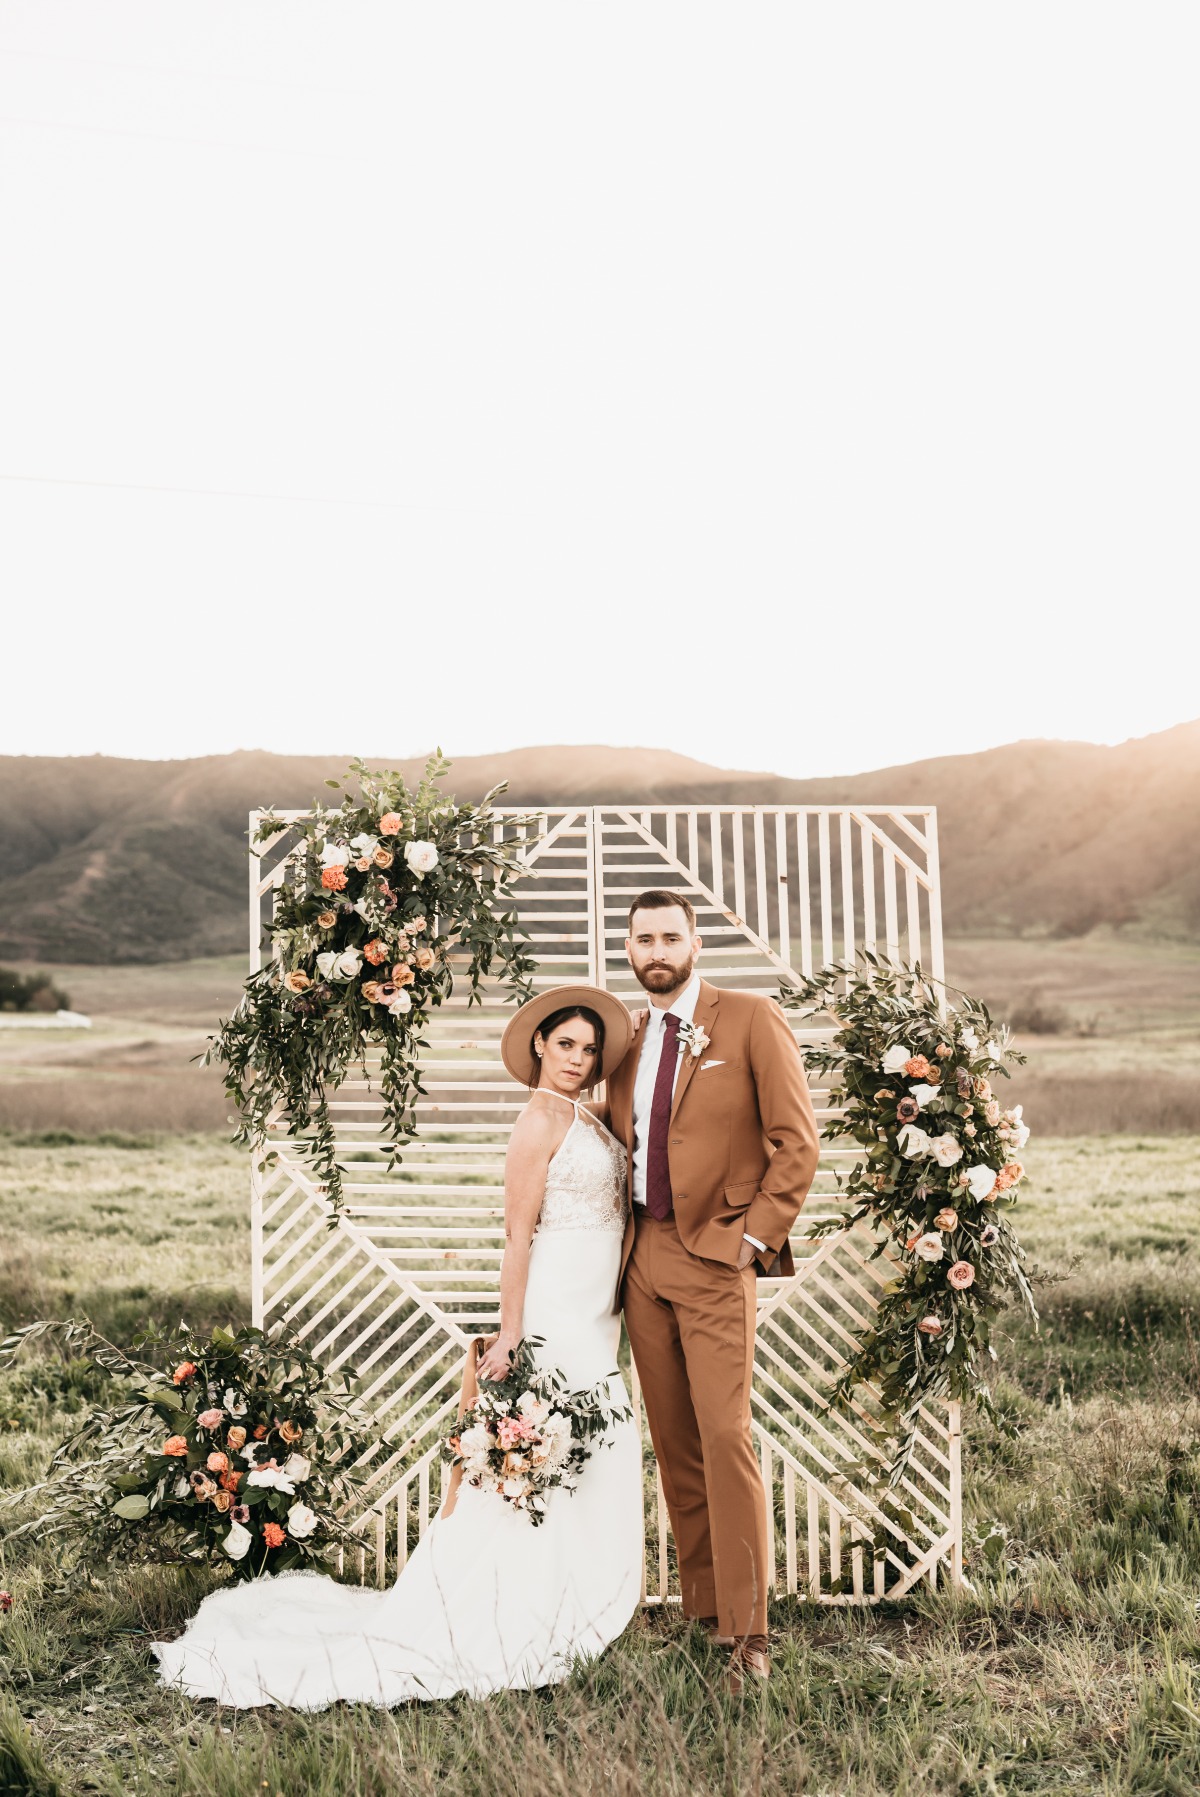 unique wedding backdrop ideas